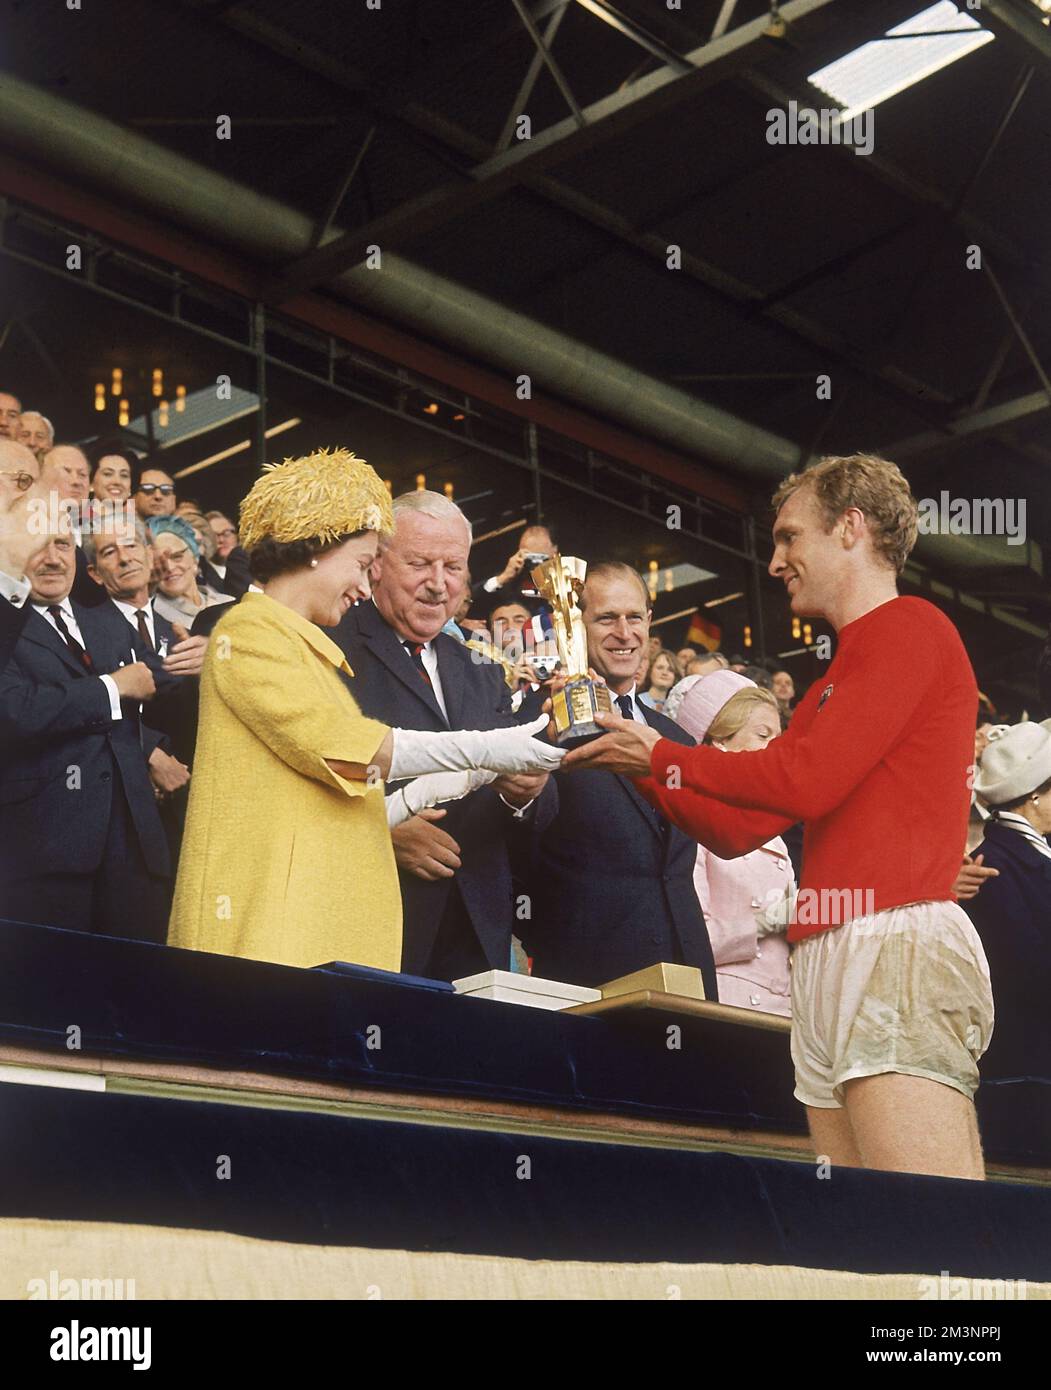 Finale di Coppa del mondo 1966. La regina Elisabetta II presenta il trofeo di Coppa del mondo (Jules Rimet Trophy) al capitano d'Inghilterra Bobby Moore, vincitore dopo aver vinto la partita contro la Germania Ovest allo Stadio di Wembley, Londra, il 30 luglio 1966. Data: 1966 Foto Stock